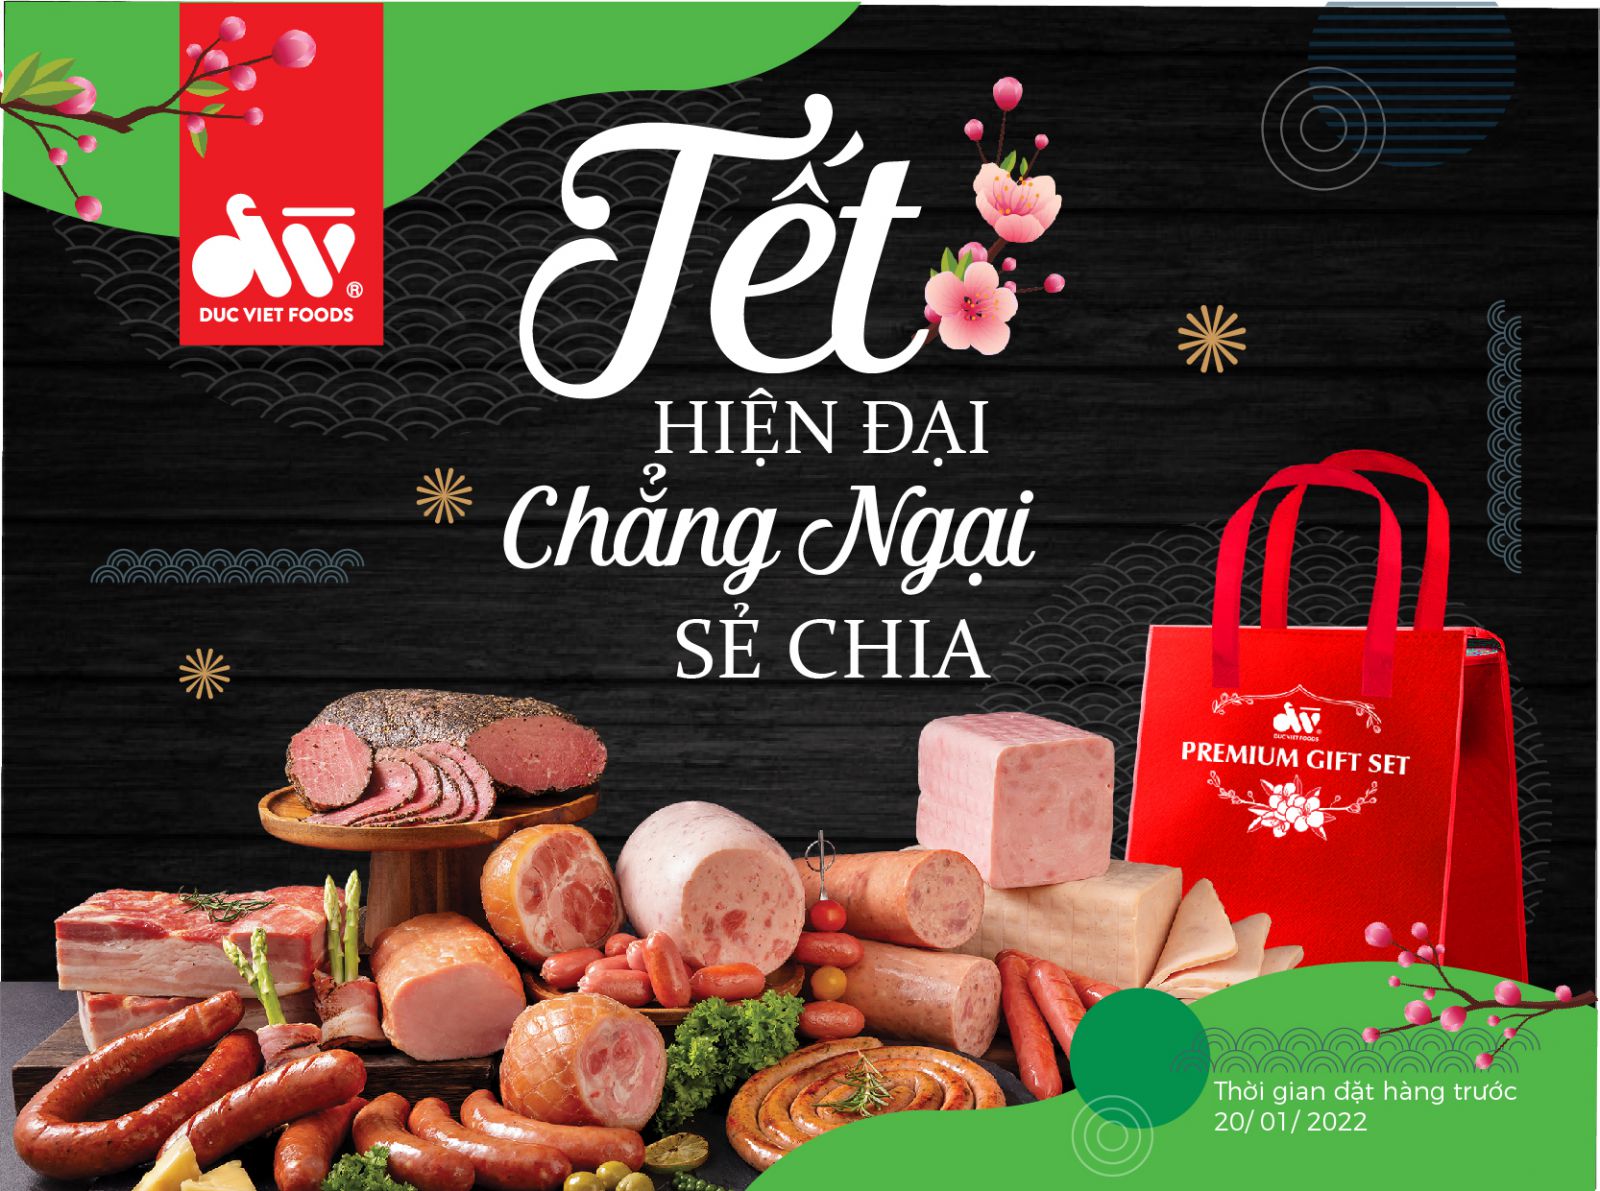 Công ty CP Thực phẩm Đức Việt cho ra mắt các sét quà với ý nghĩa “Tết hiện đại chẳng ngại sẻ chia”.